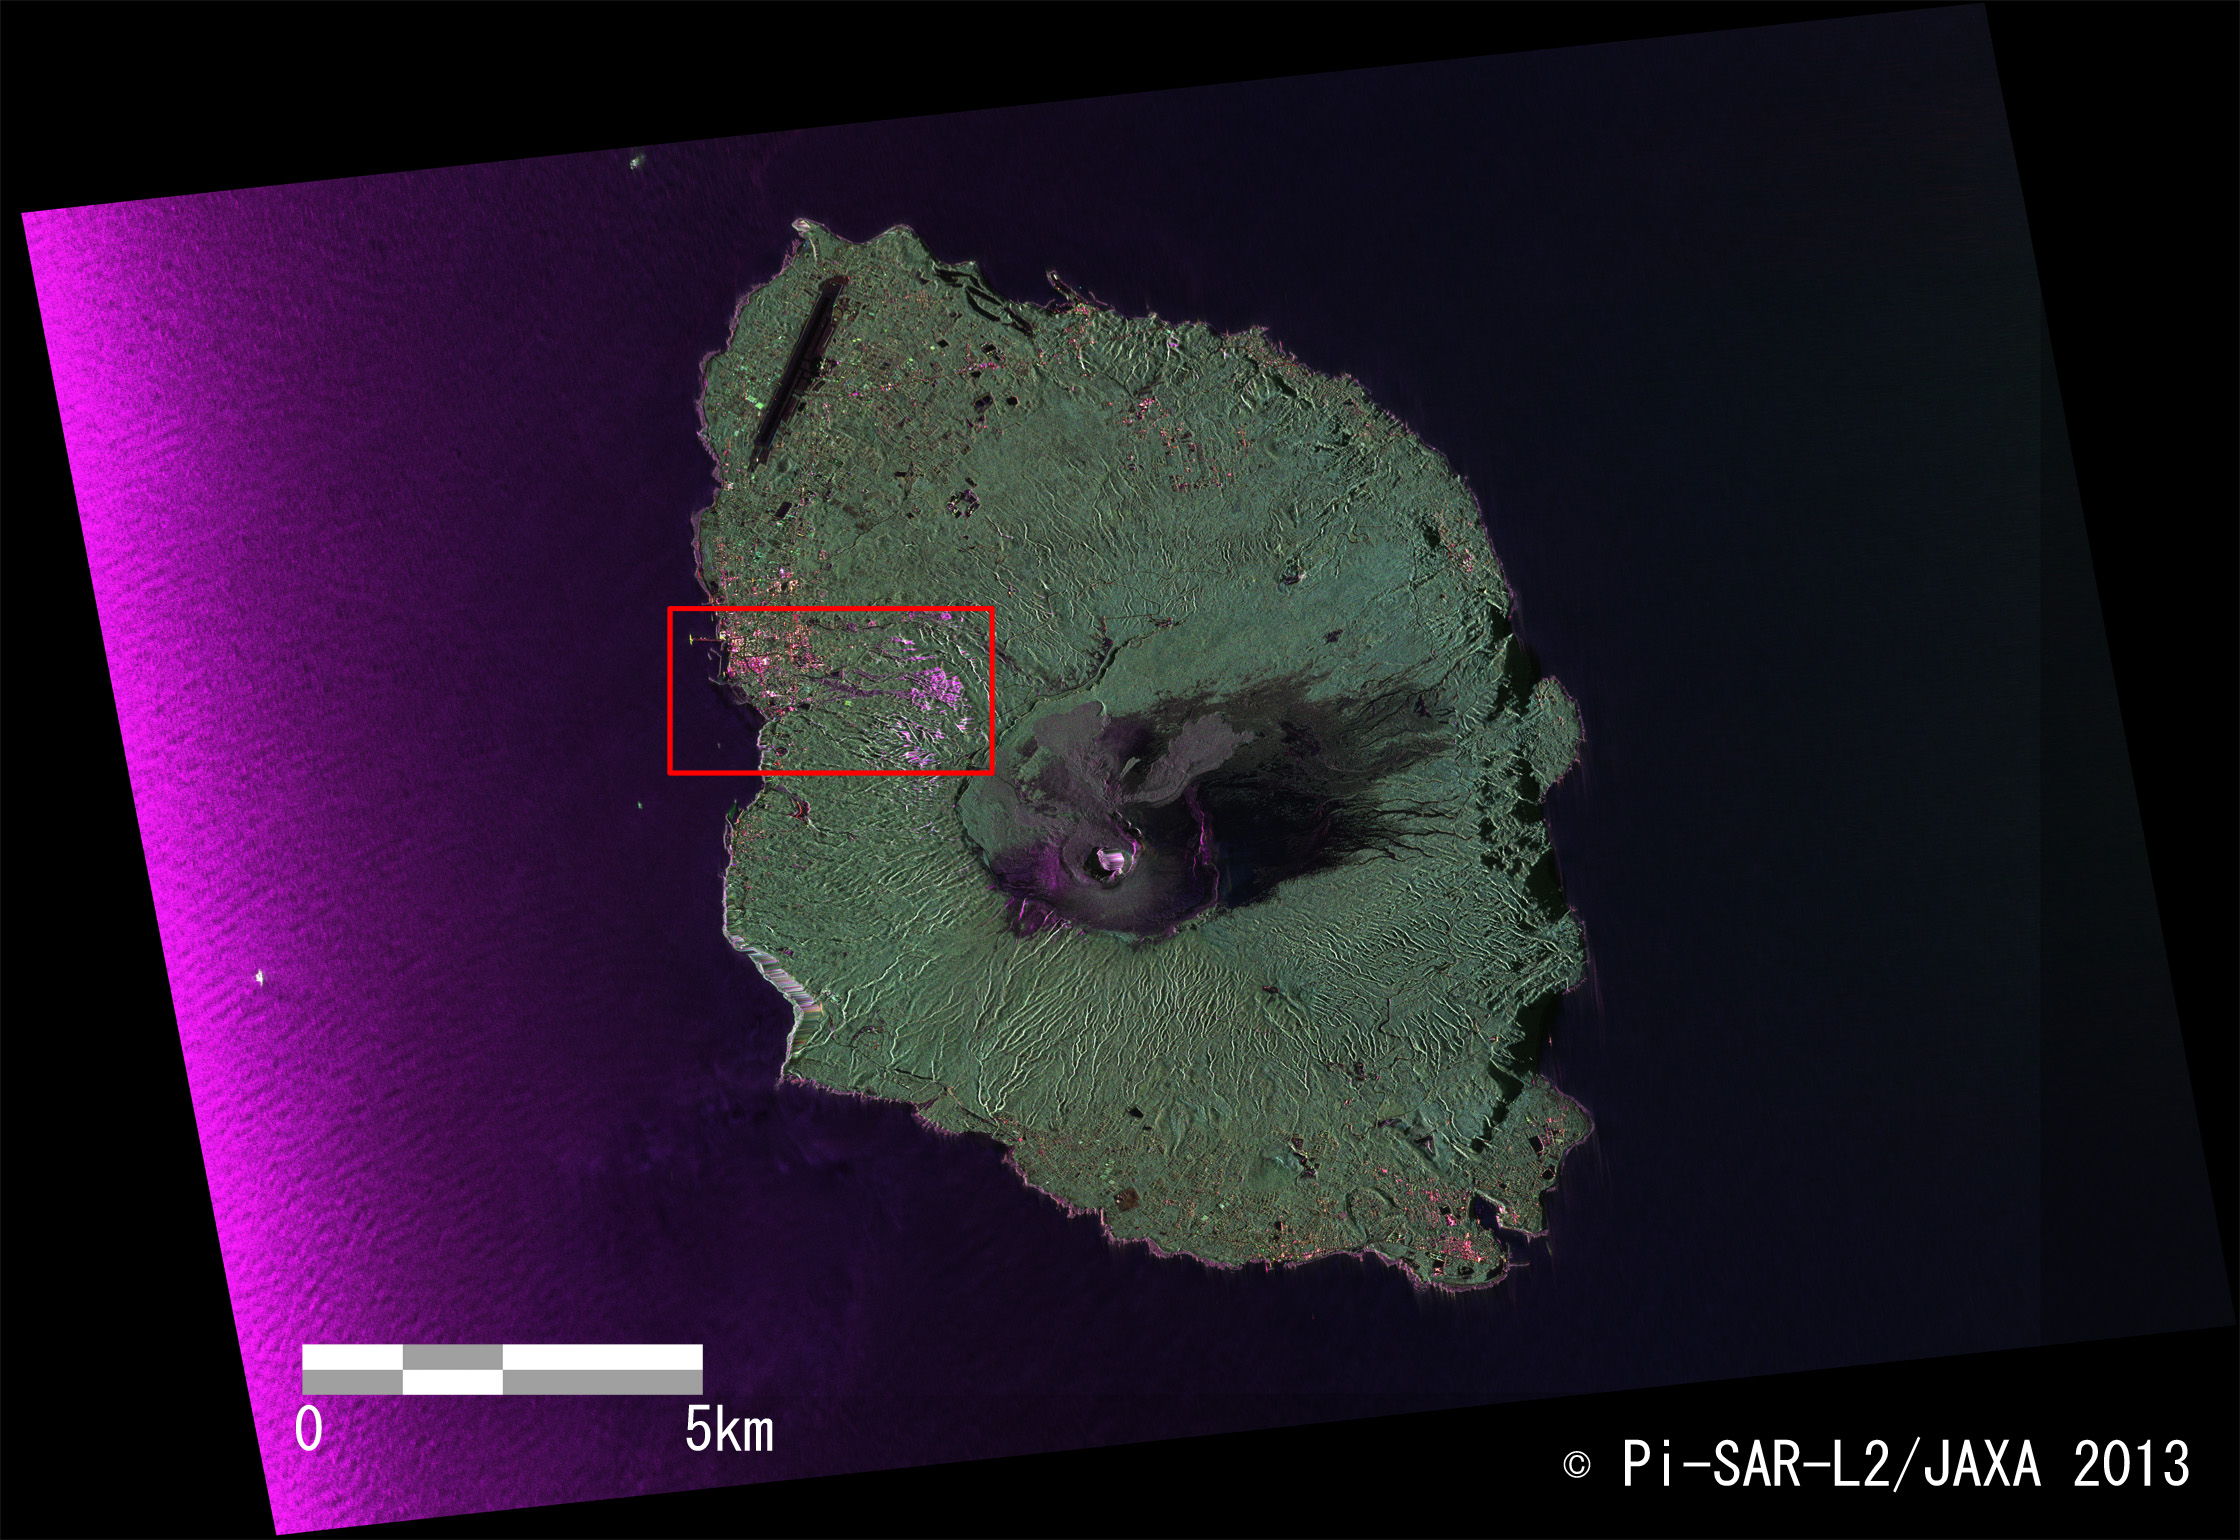 図2: Pi-SAR-L2により観測された伊豆大島全体のカラー合成画像